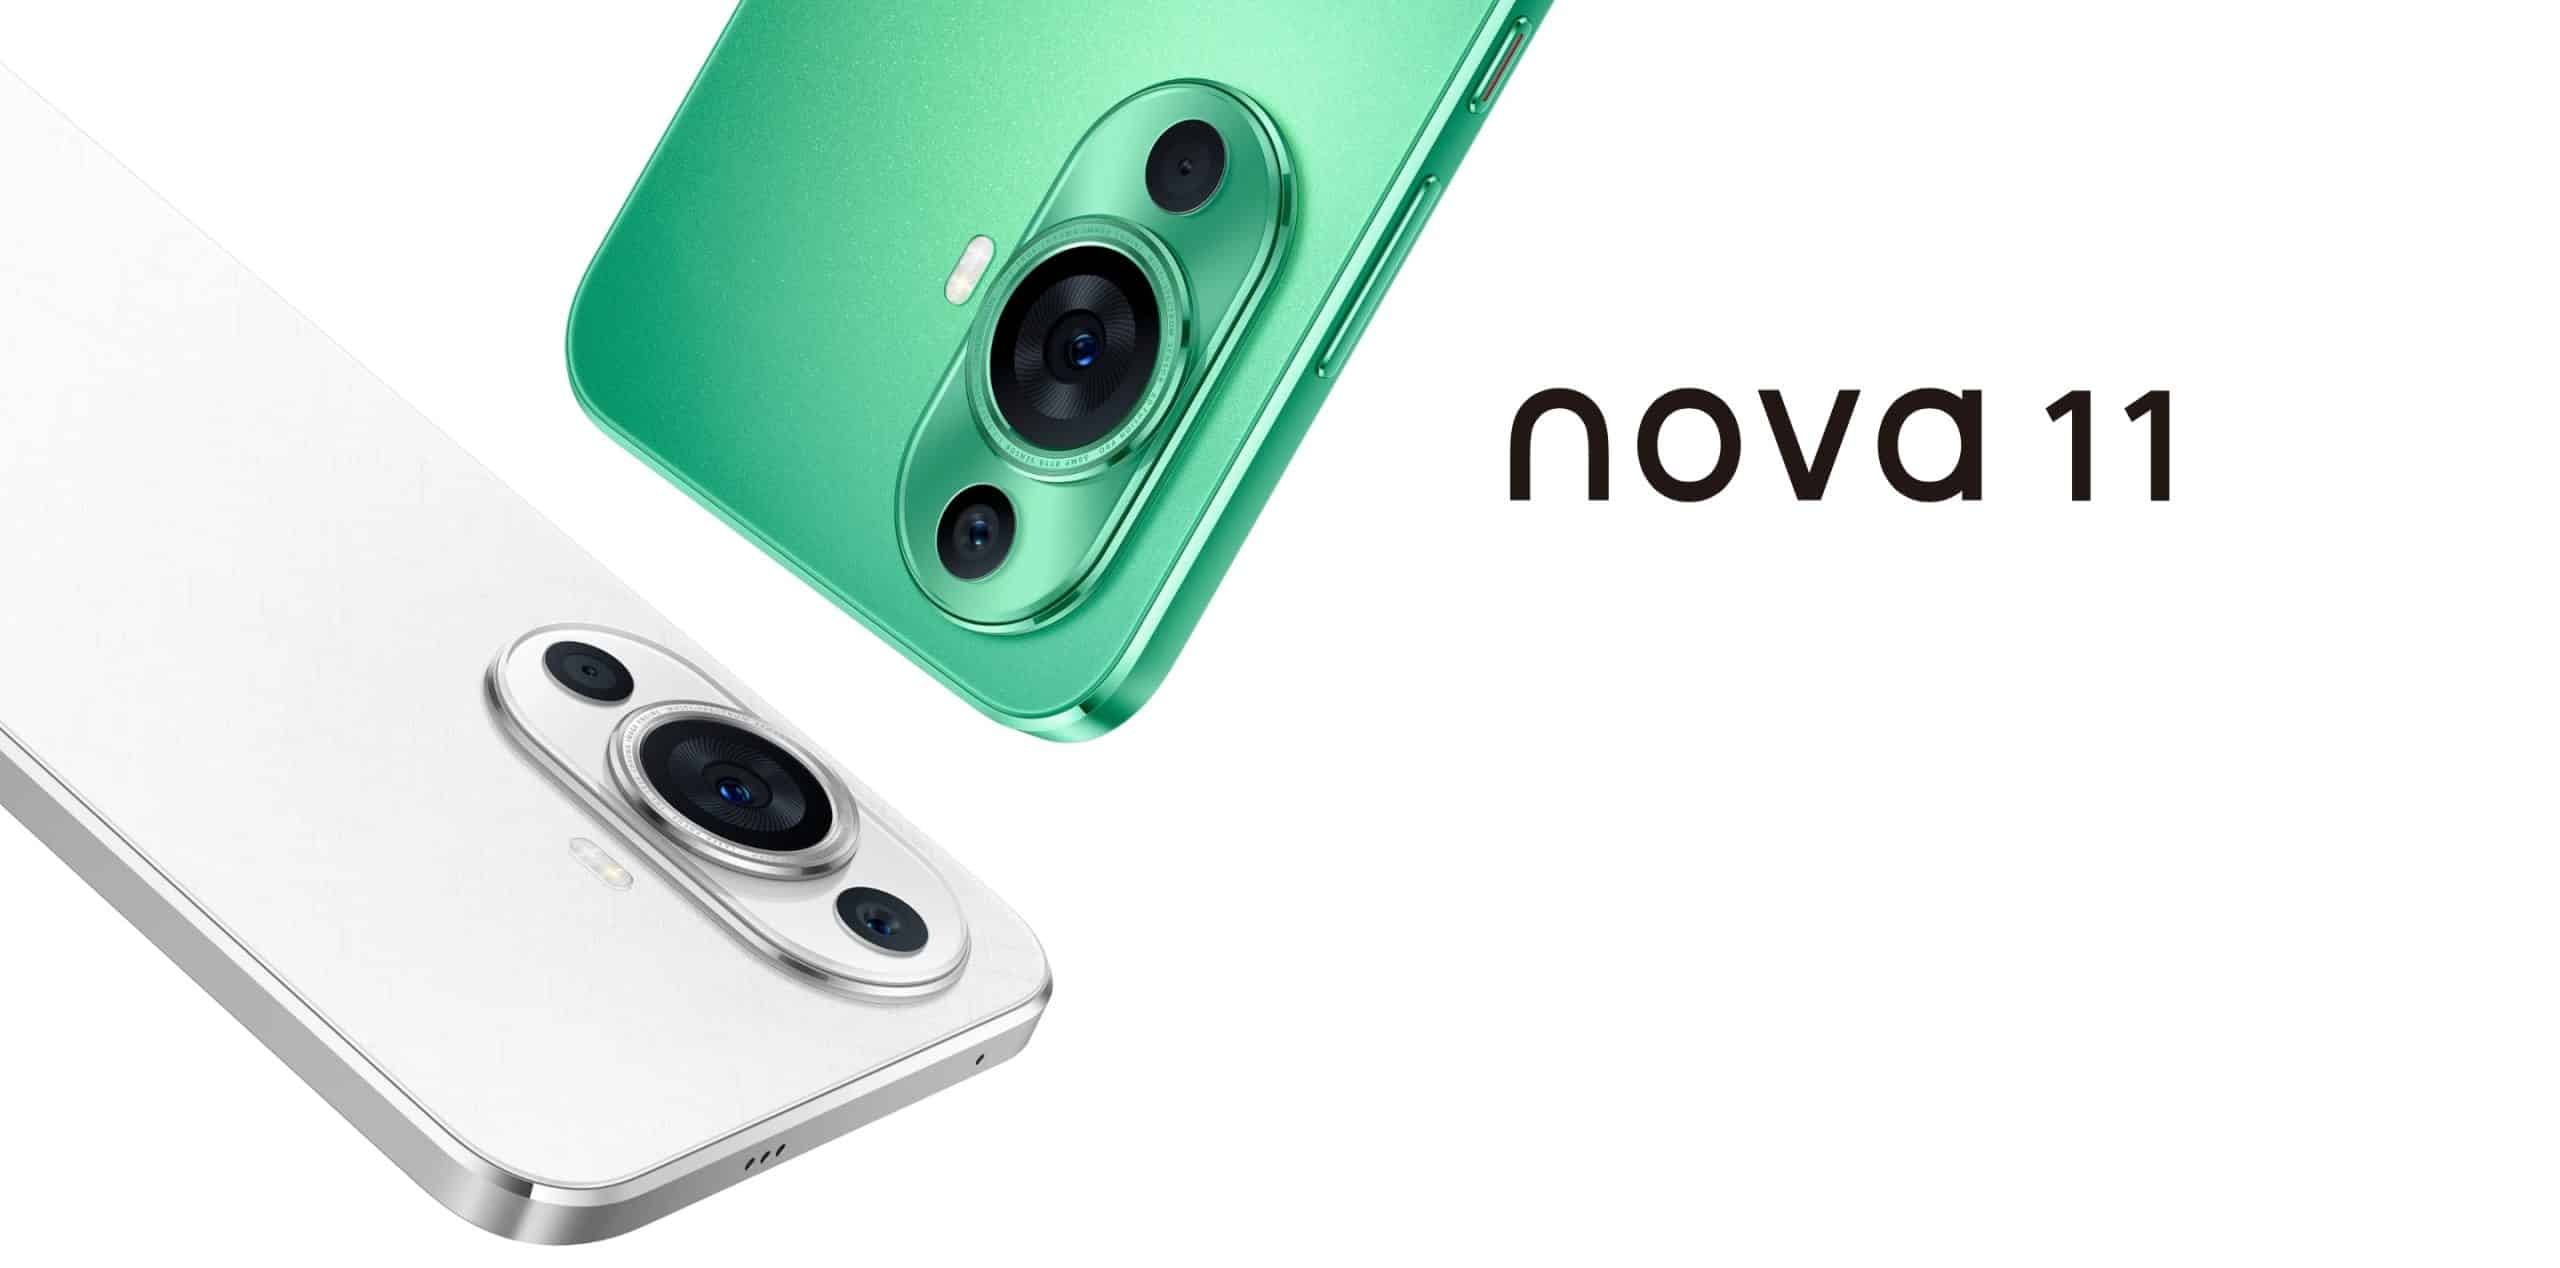 هواوي تطلق سلسلة Nova 11 الجديدة: المواصفات والمميزات والأسعار